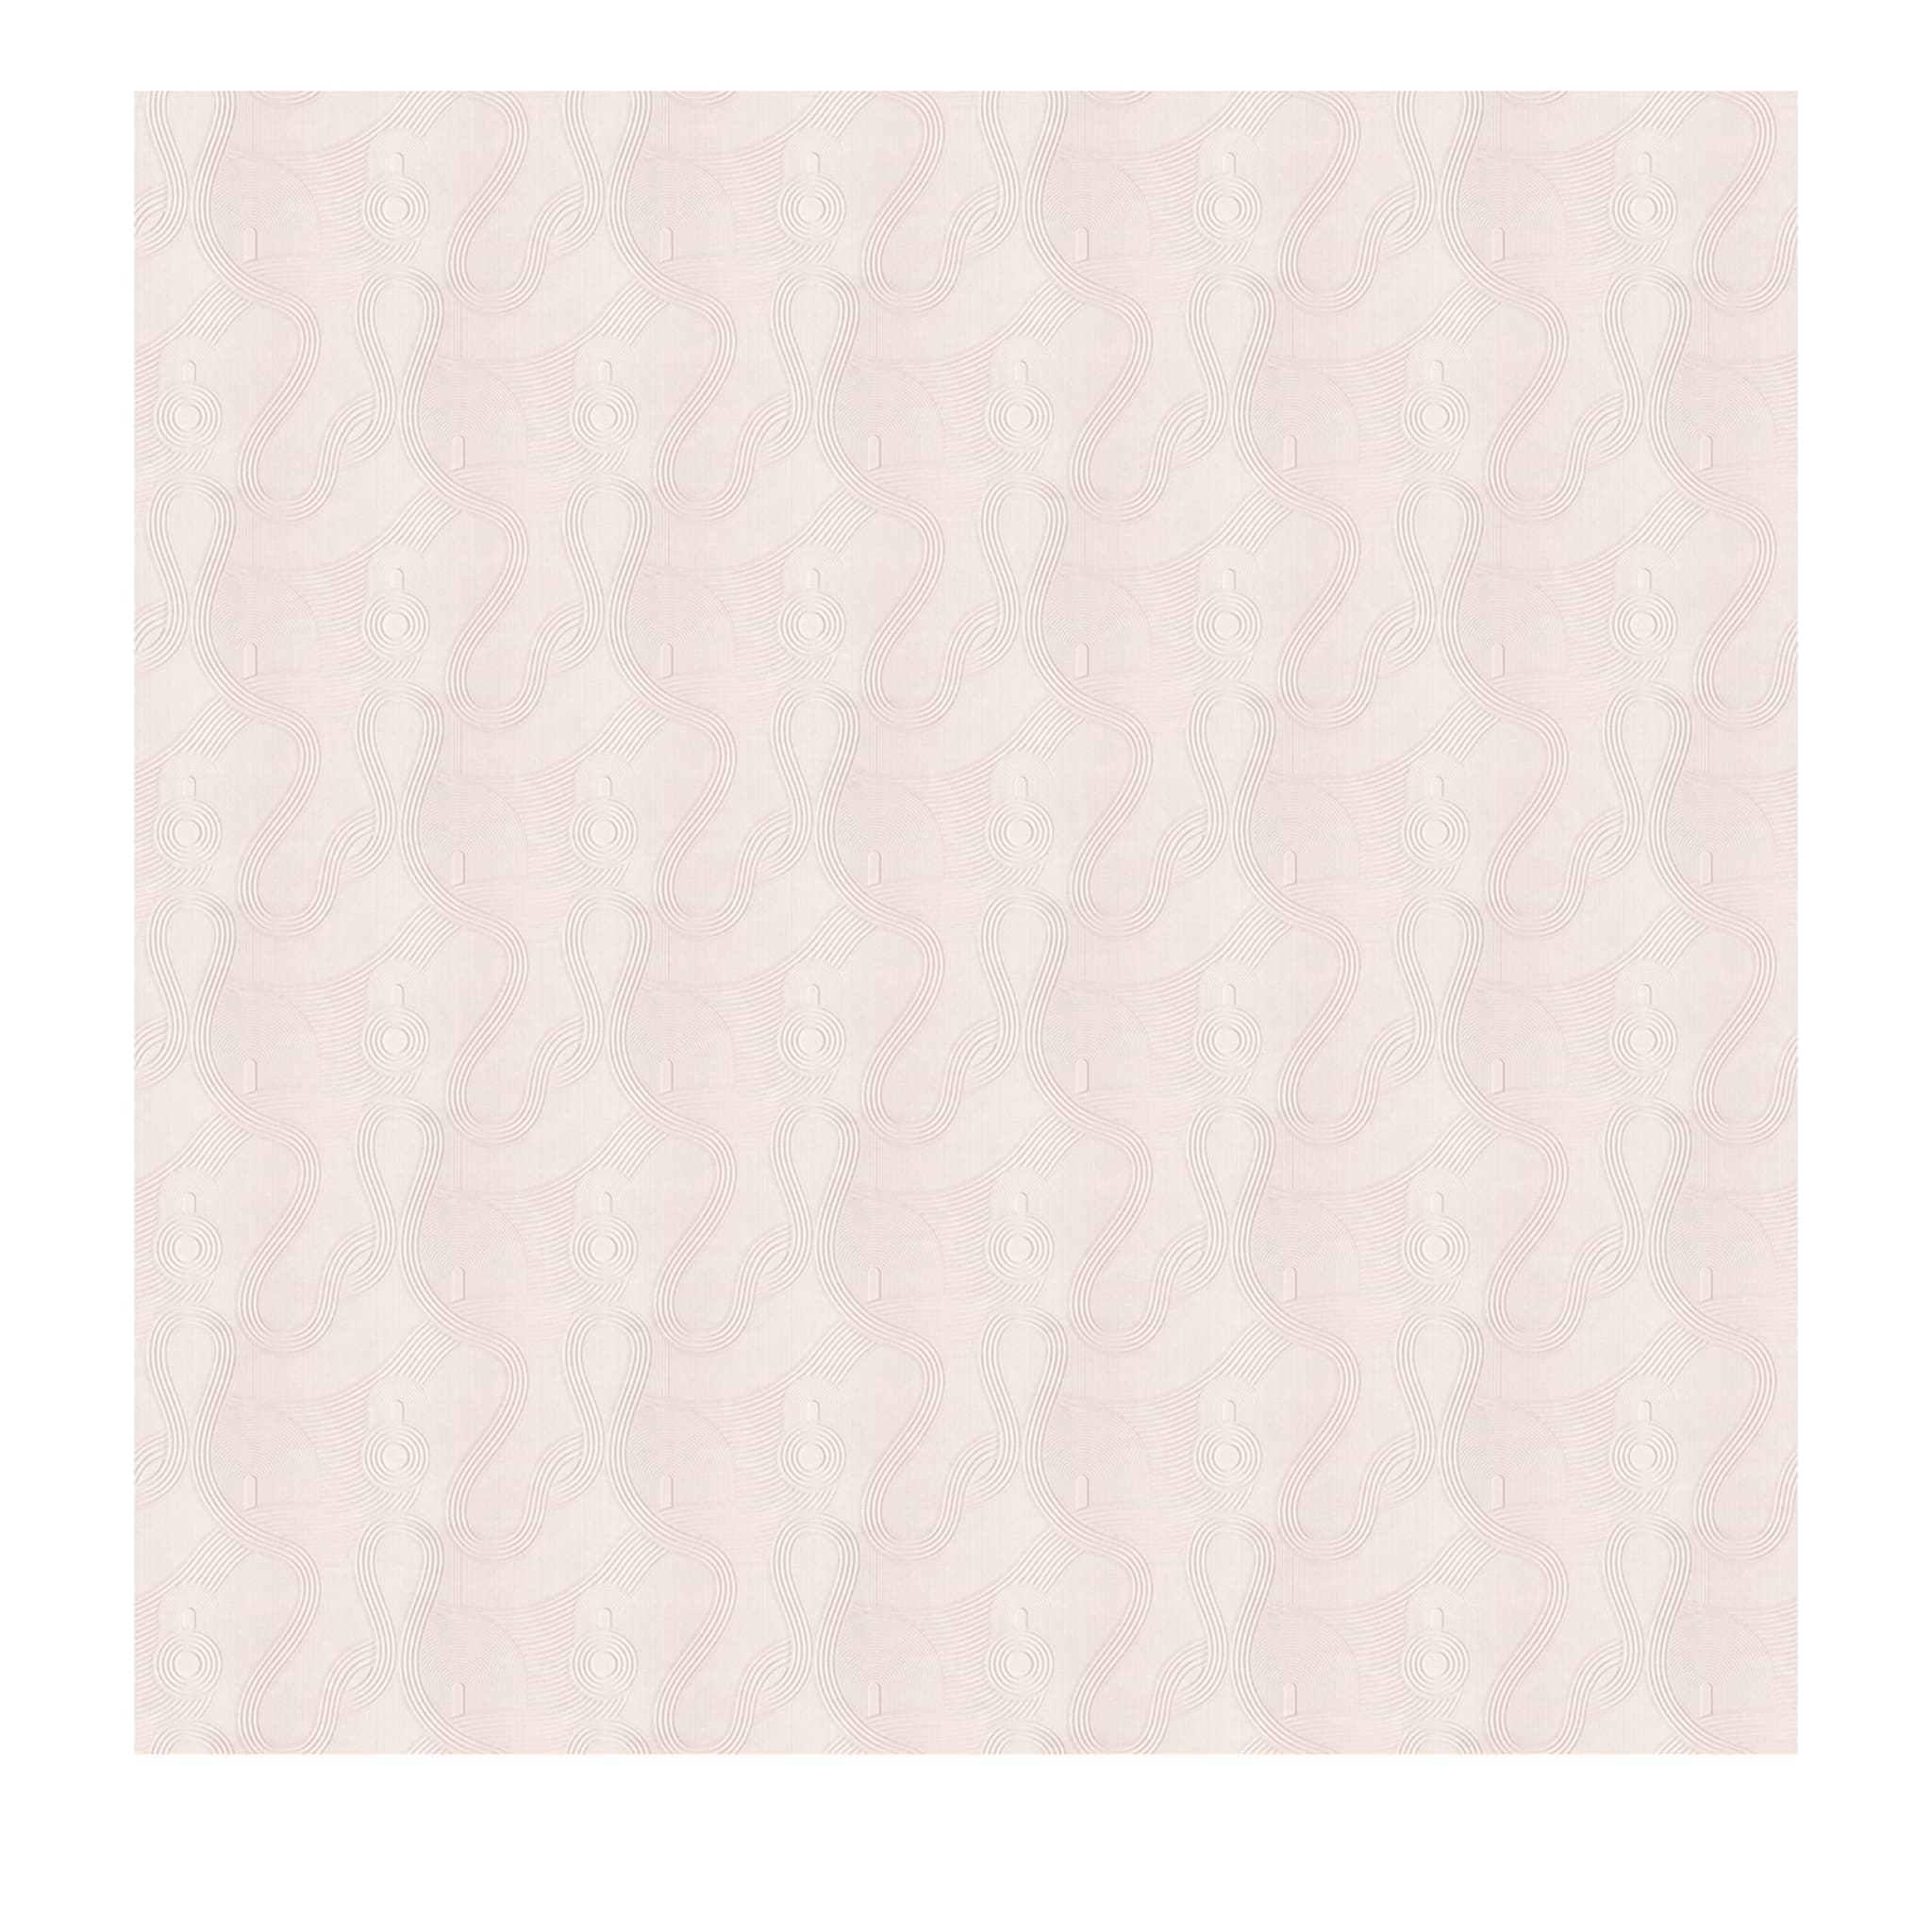 Zen White Wallpaper - Main view